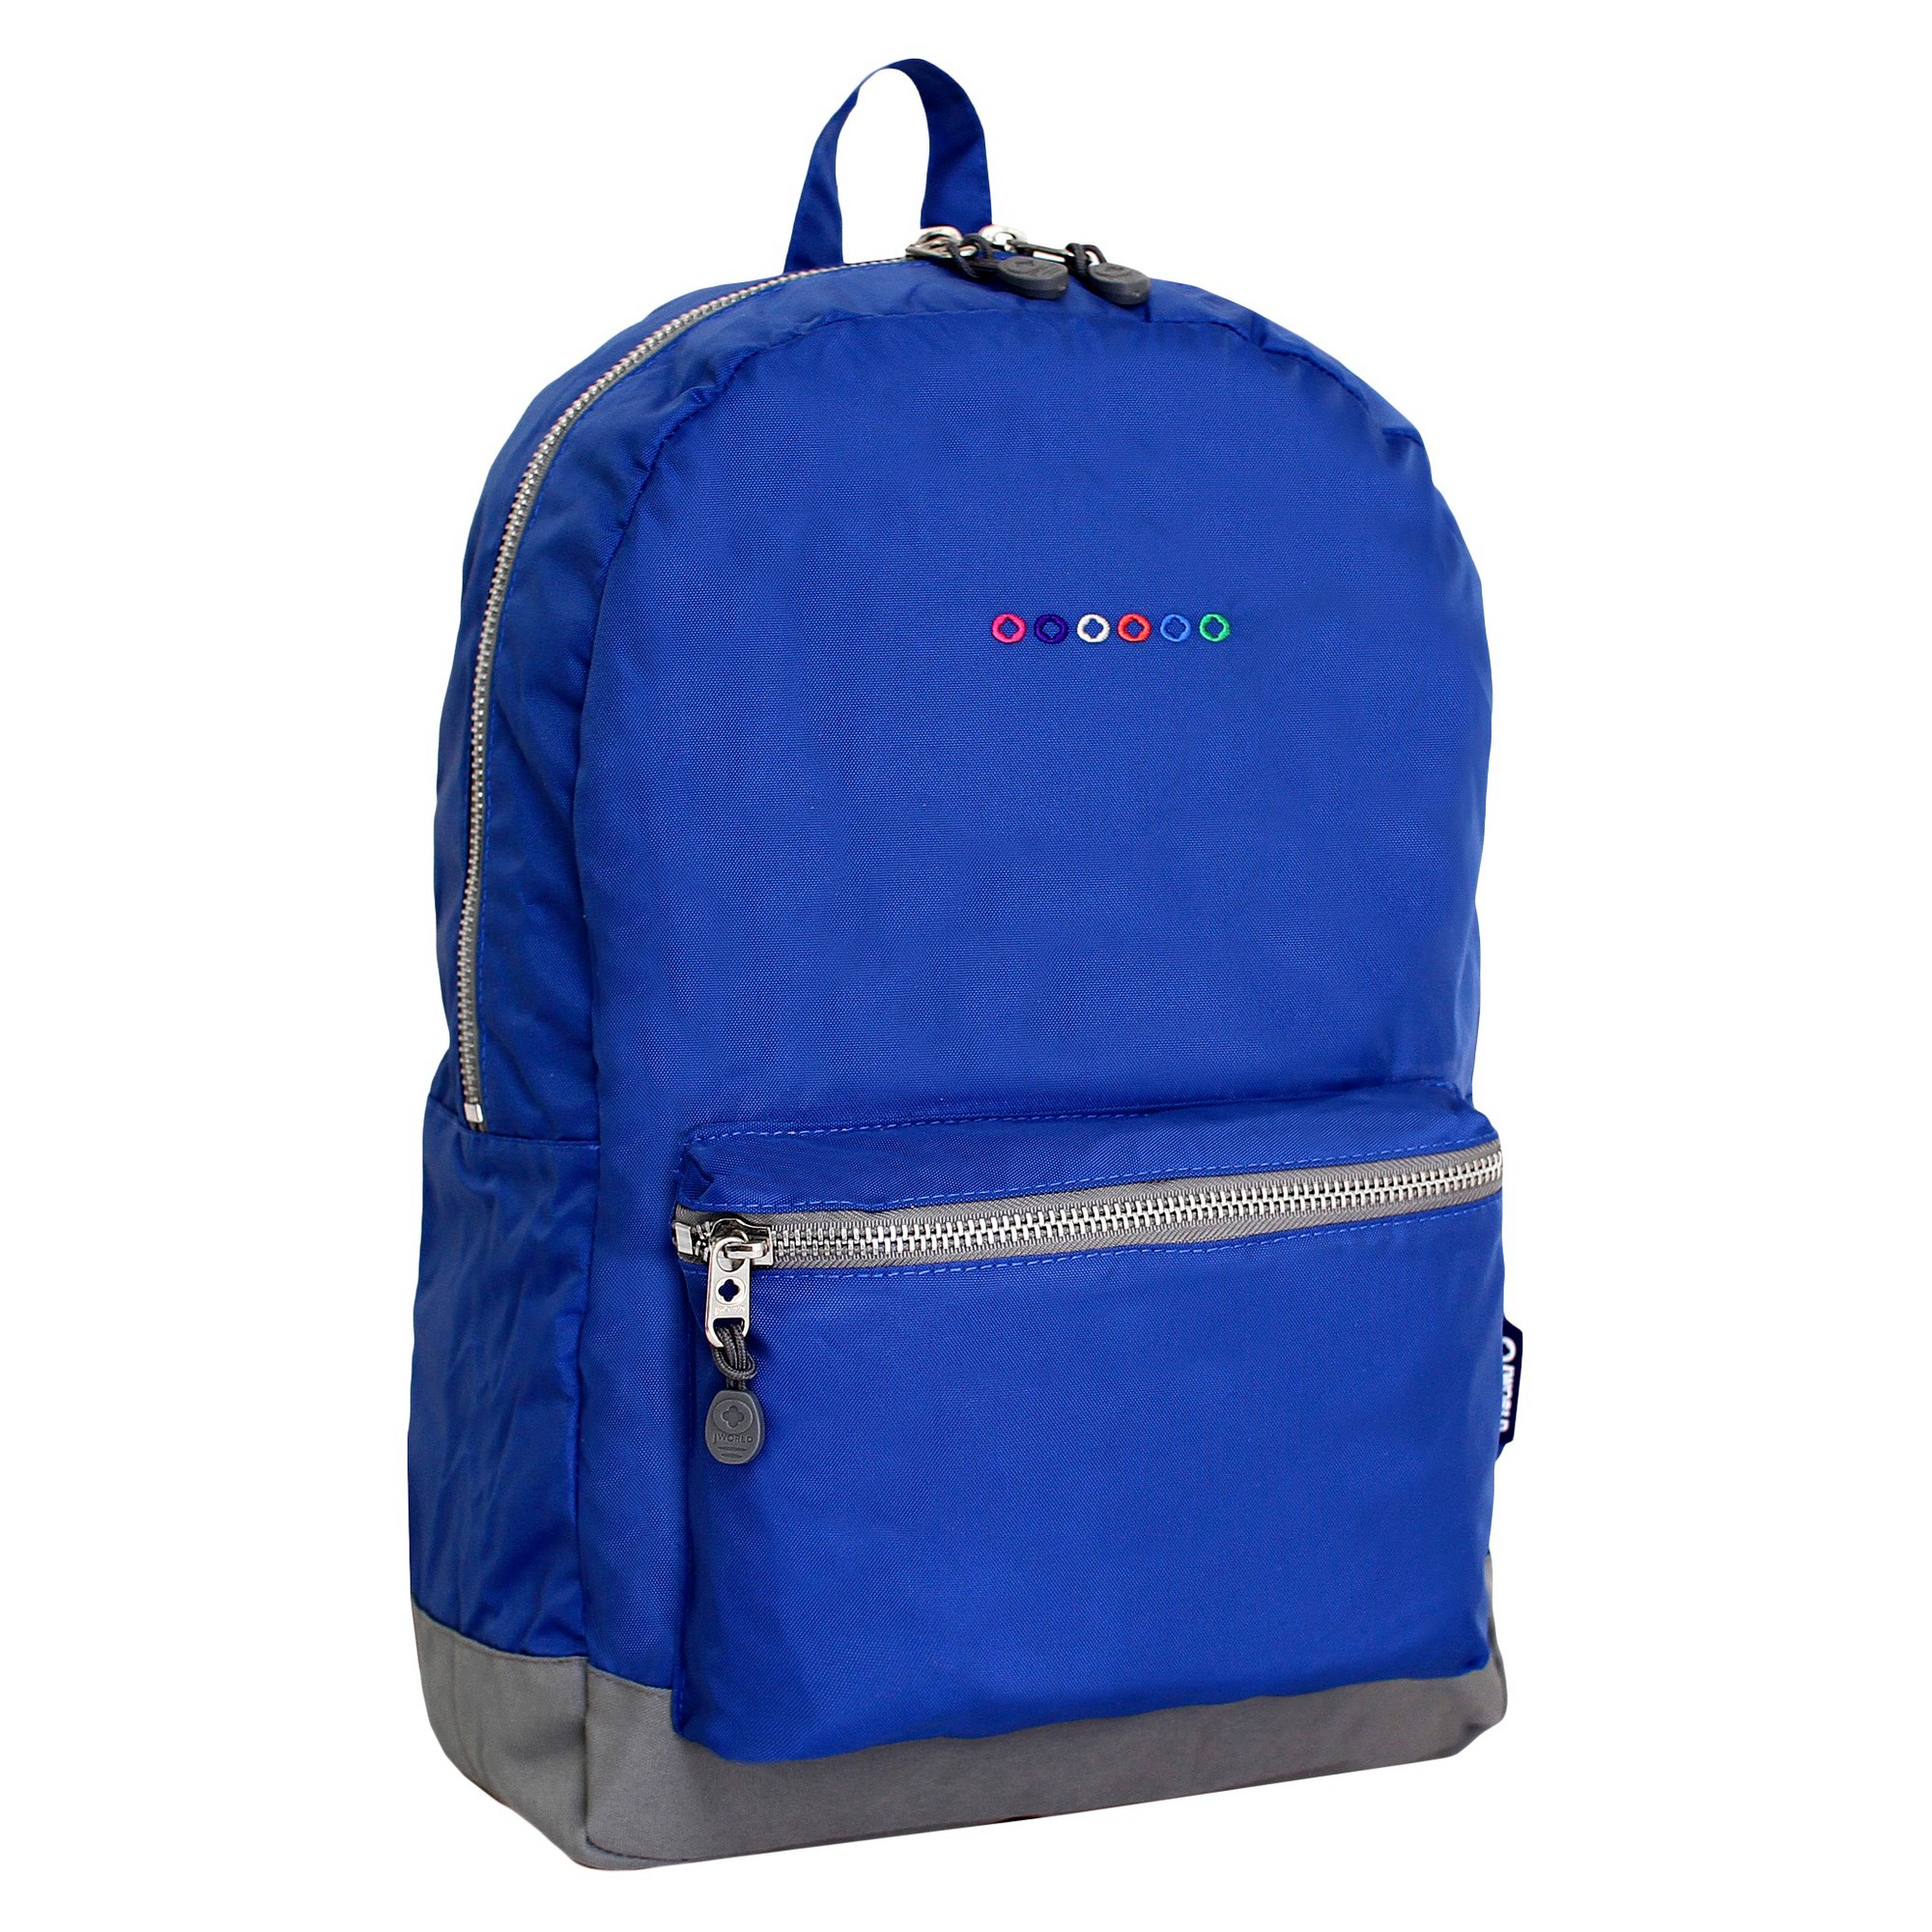 'J World 17.5'' Lux Laptop Backpack - Indigo, Kids Unisex, Size: Small, Blue'